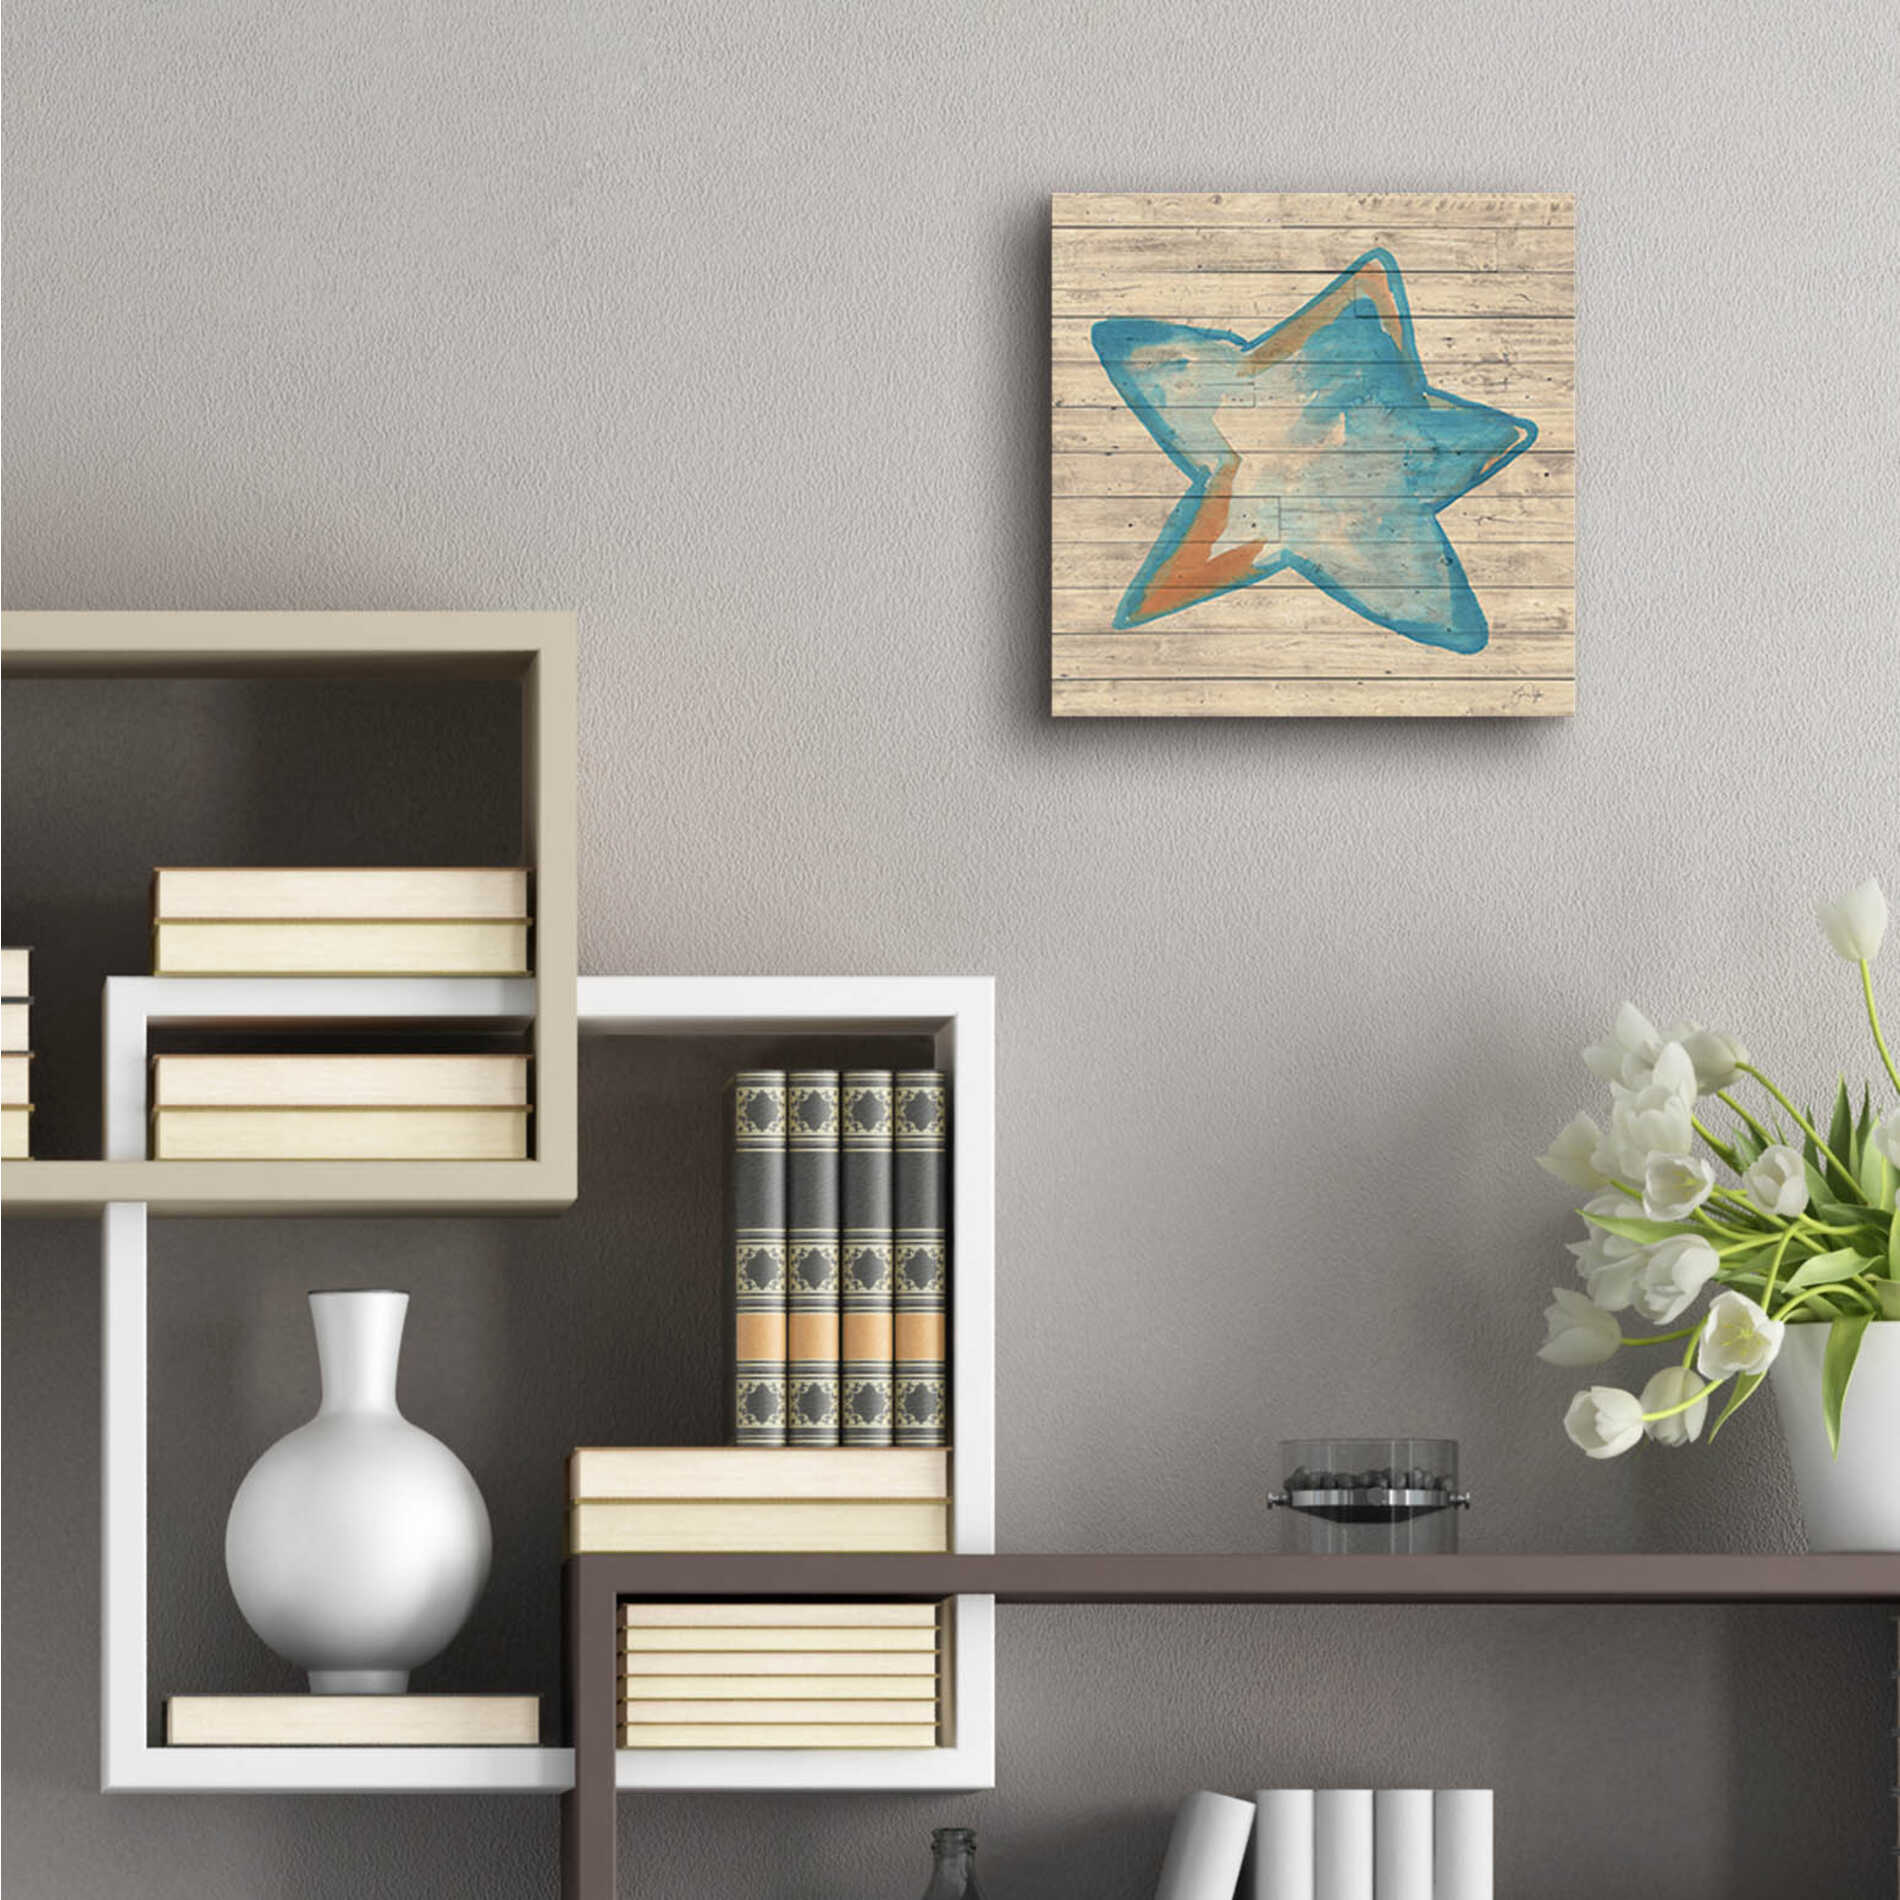 Epic Art 'A Starfish Wish' by Yass Naffas Designs, Acrylic Glass Wall Art,12x12